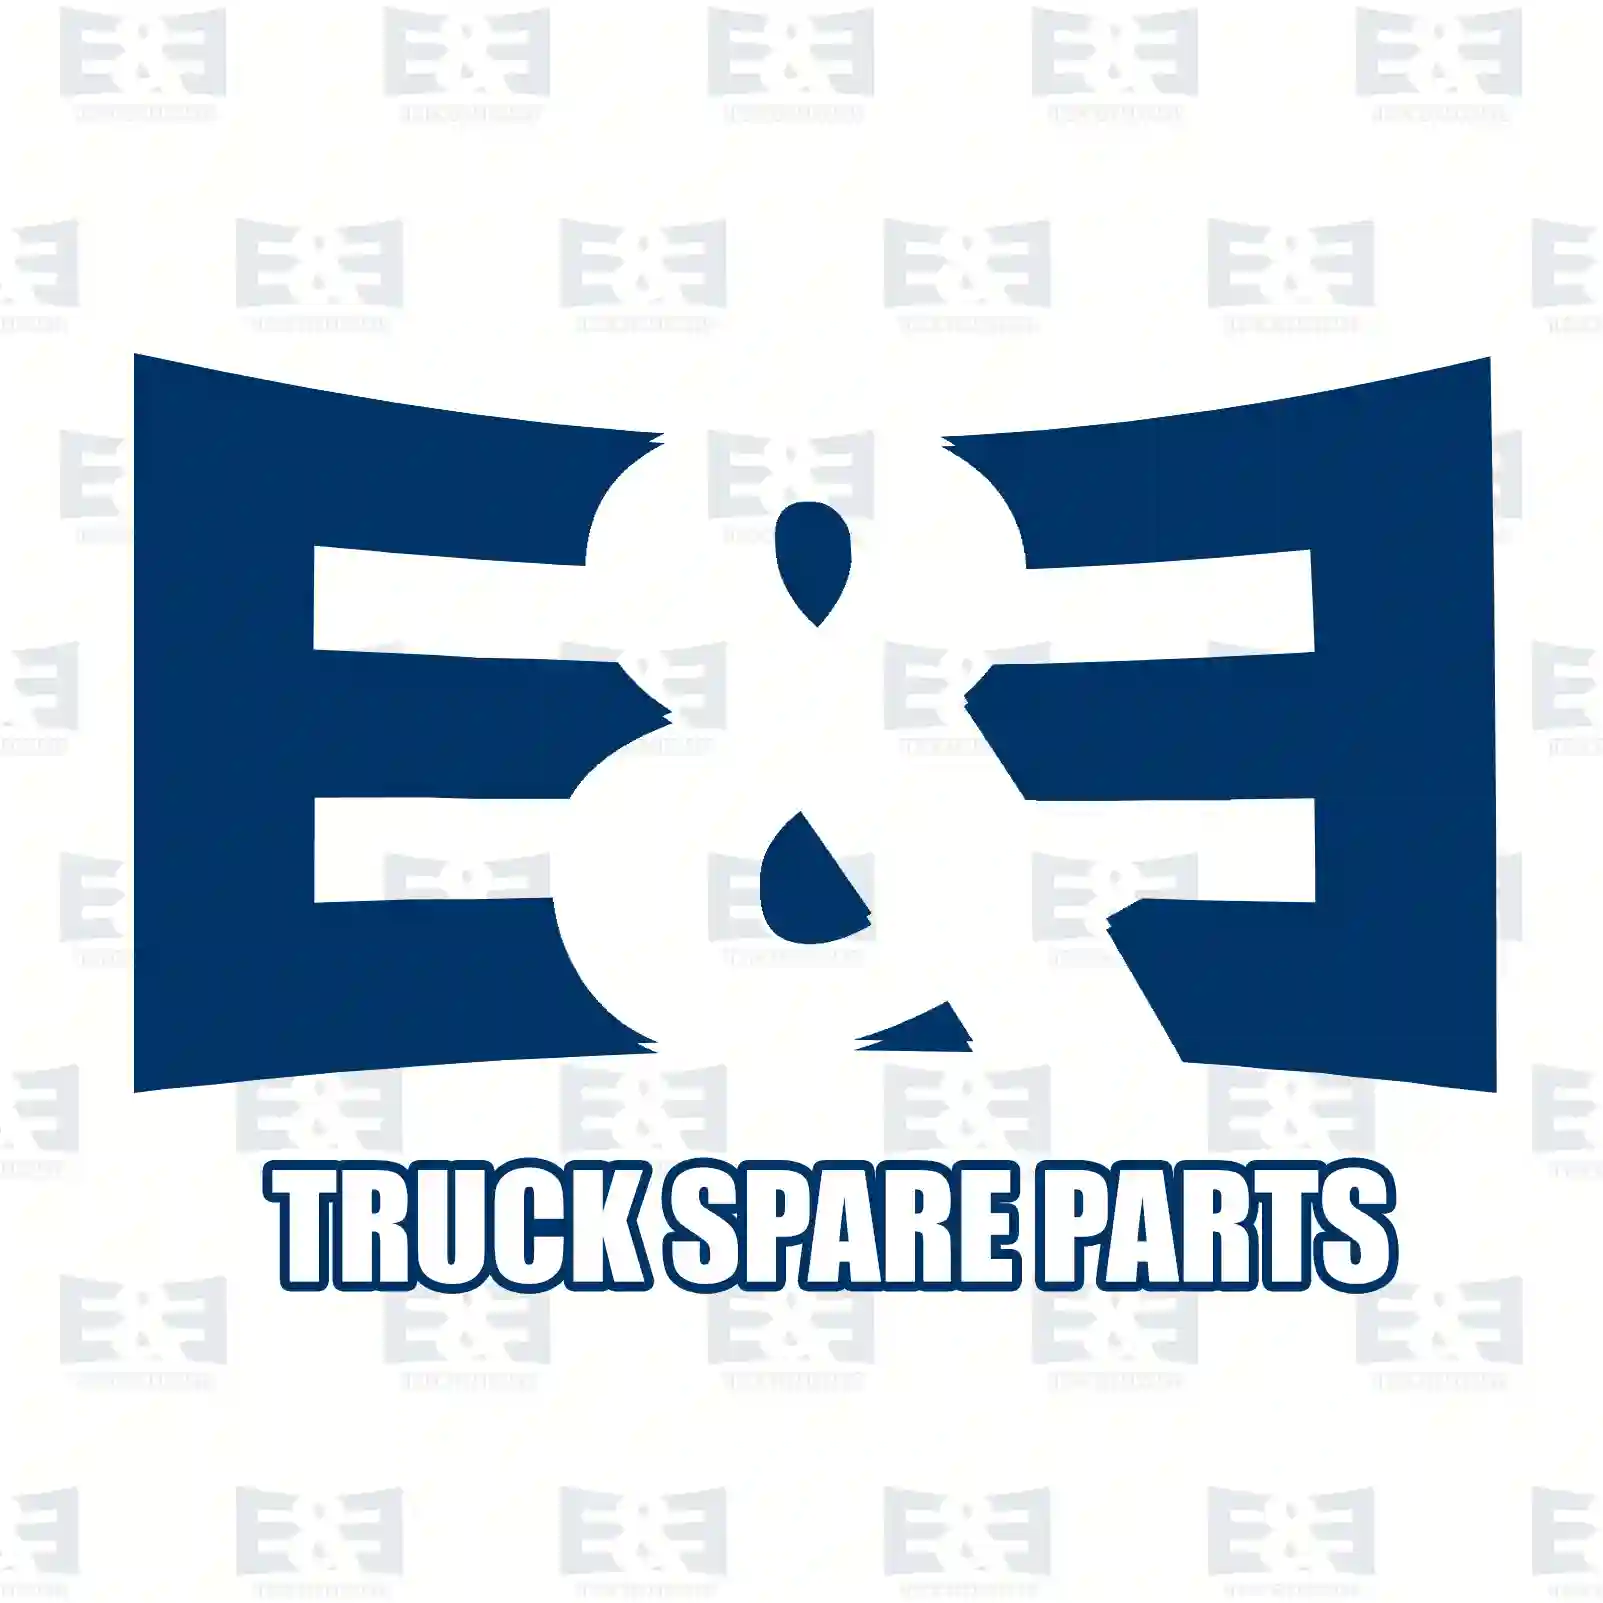 Mounting kit, air spring, 2E2283535, 81436006037S, 81436006044S ||  2E2283535 E&E Truck Spare Parts | Truck Spare Parts, Auotomotive Spare Parts Mounting kit, air spring, 2E2283535, 81436006037S, 81436006044S ||  2E2283535 E&E Truck Spare Parts | Truck Spare Parts, Auotomotive Spare Parts